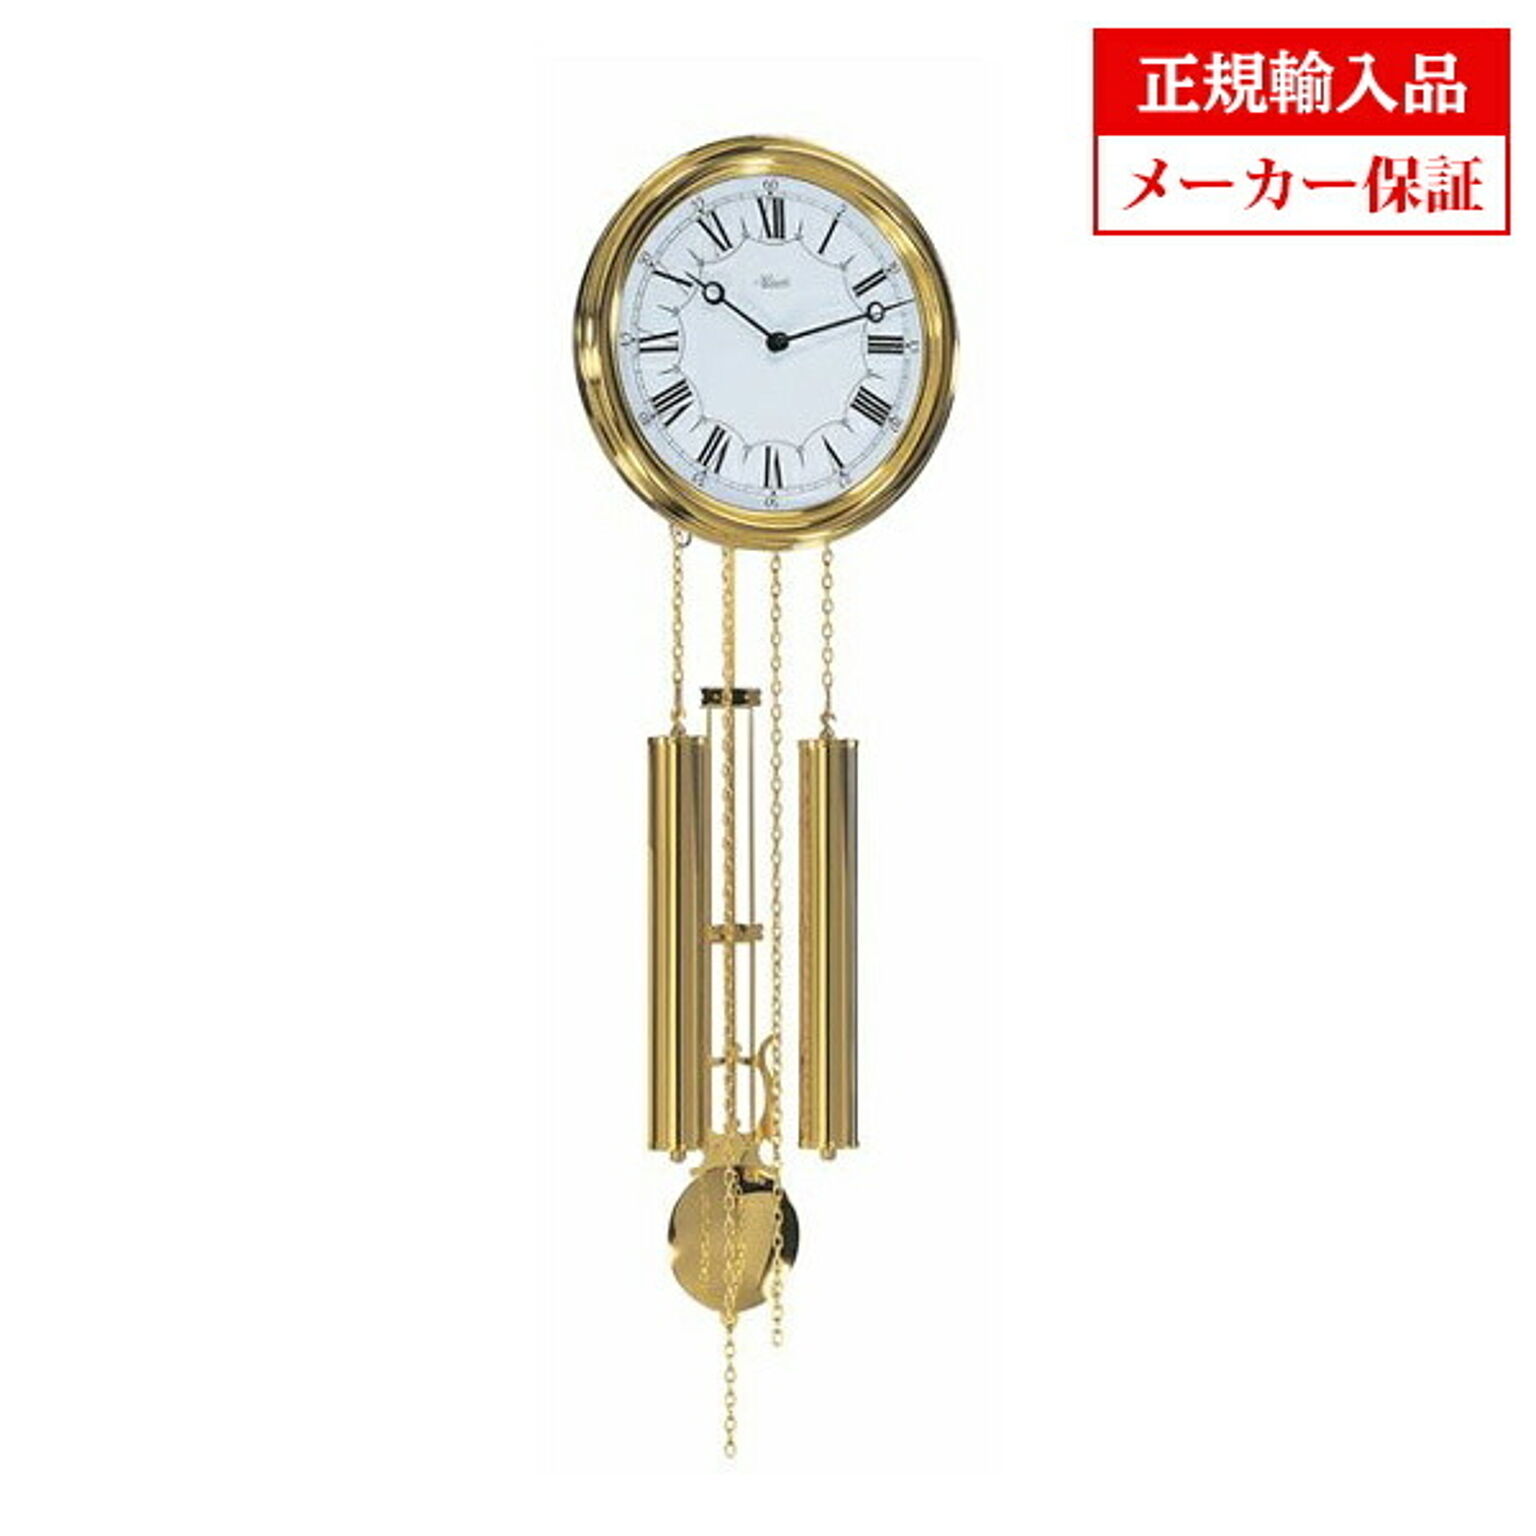 ヘルムレ HERMLE 60992-002214 機械式掛け時計 真鍮